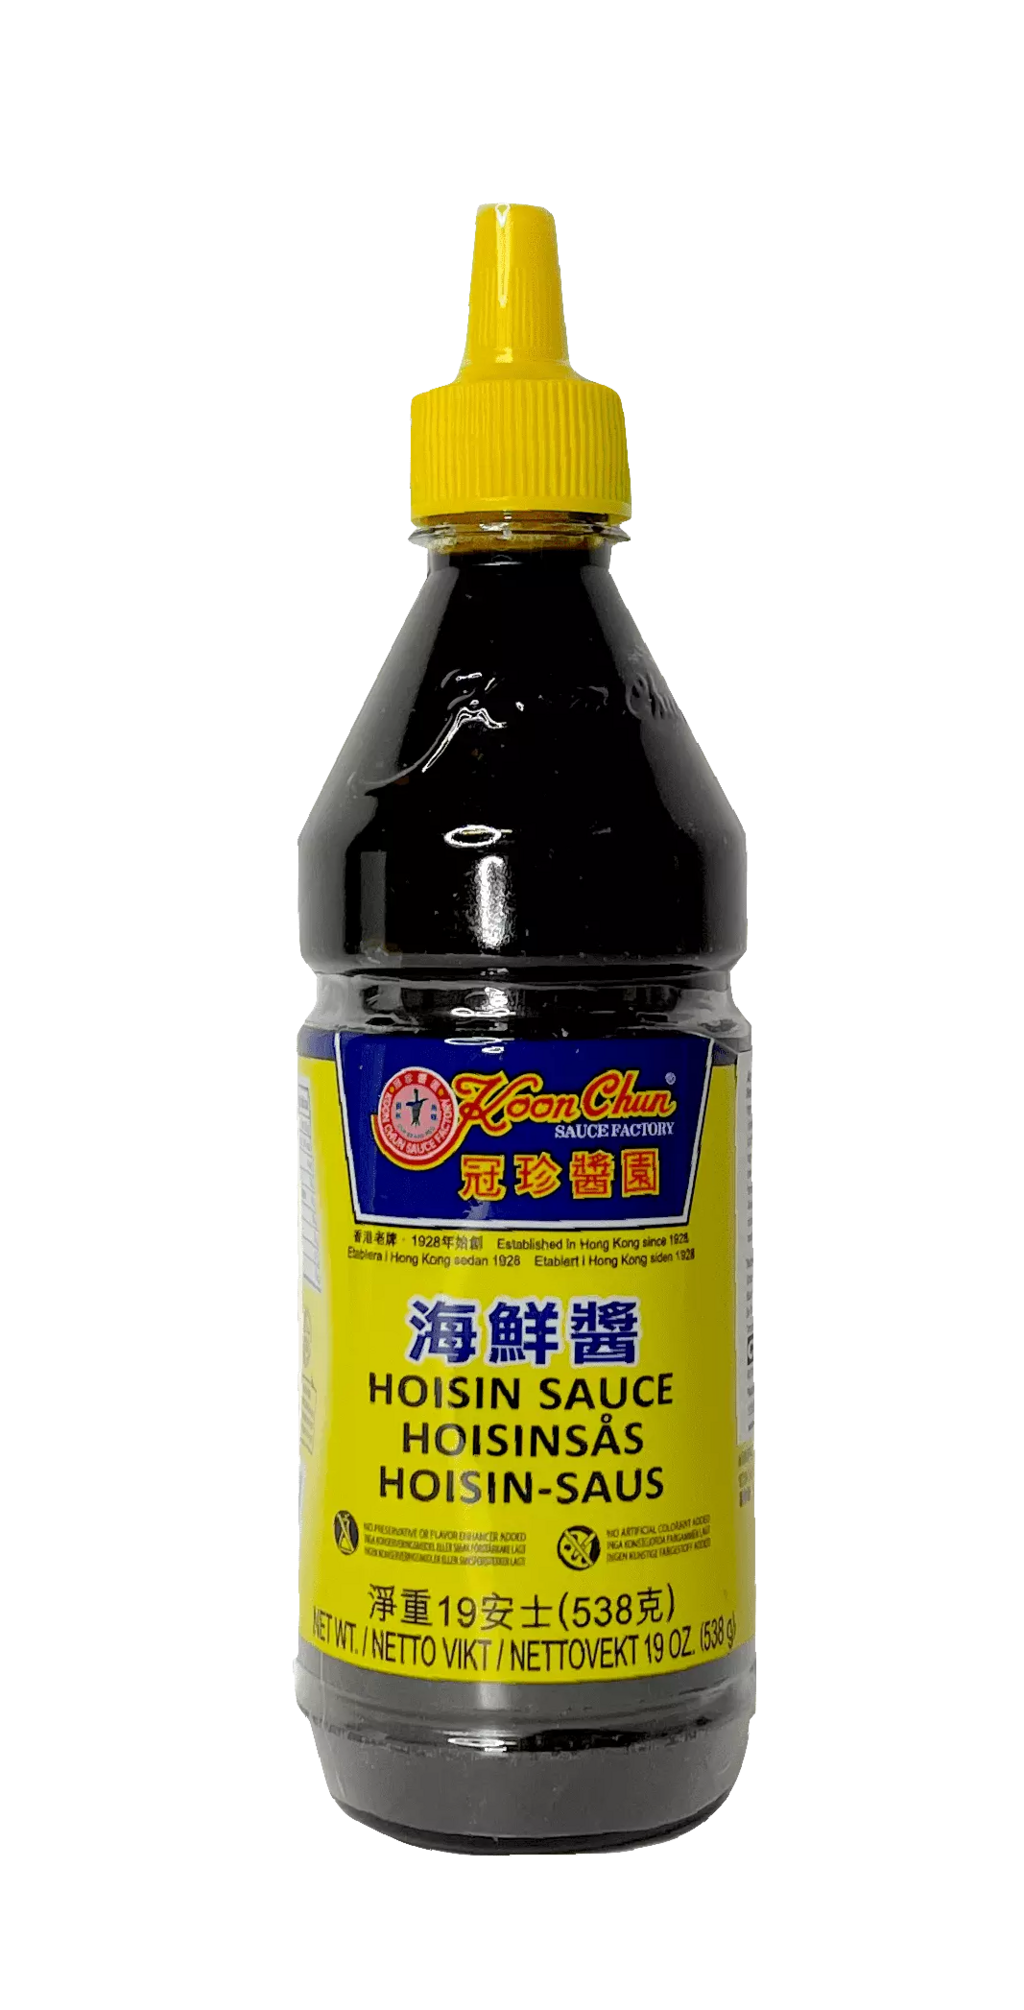 海鲜酱 瓶裝 538g 冠珍酱园 香港